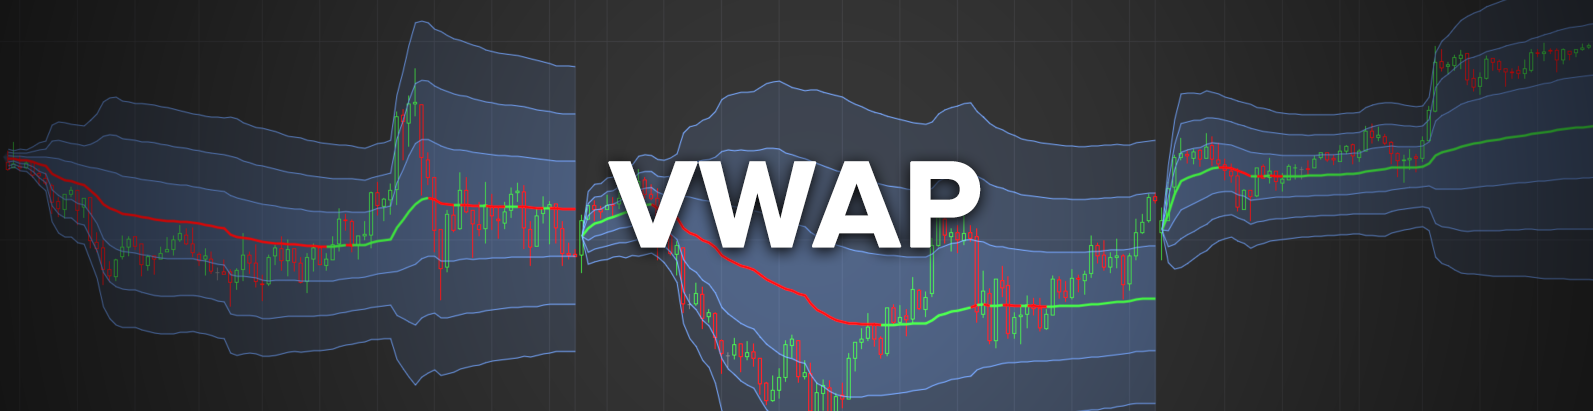 VWAP futures trading